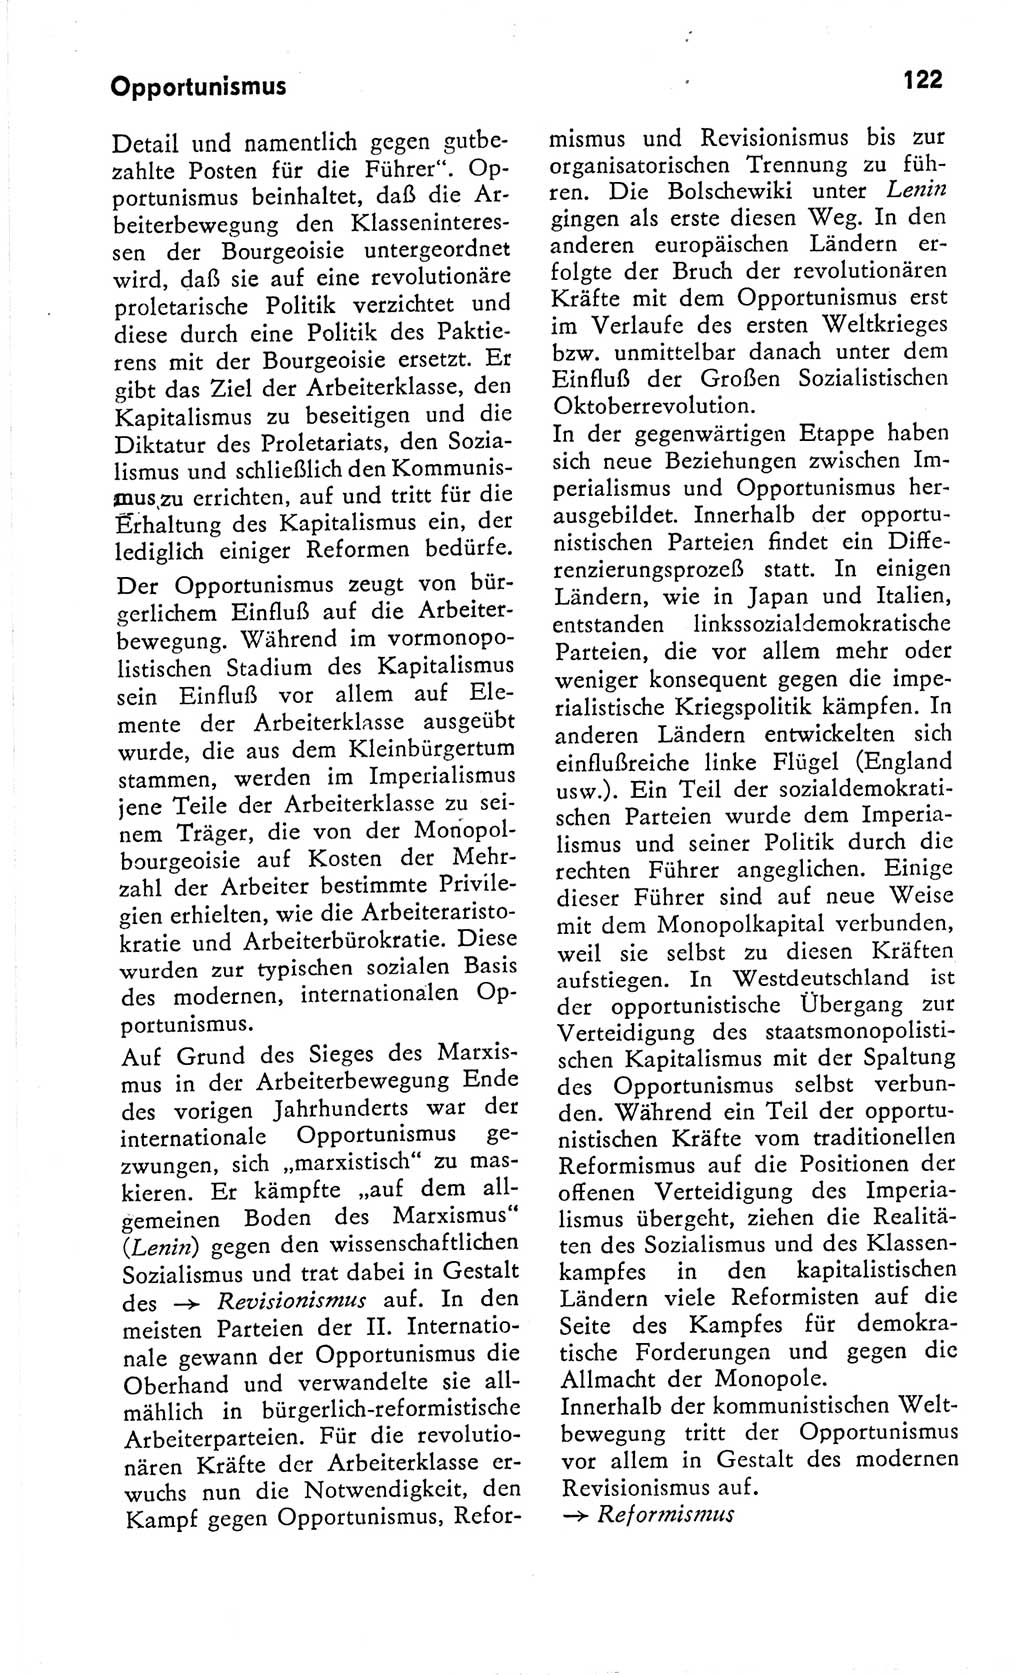 Kleines Wörterbuch der marxistisch-leninistischen Philosophie [Deutsche Demokratische Republik (DDR)] 1966, Seite 122 (Kl. Wb. ML Phil. DDR 1966, S. 122)